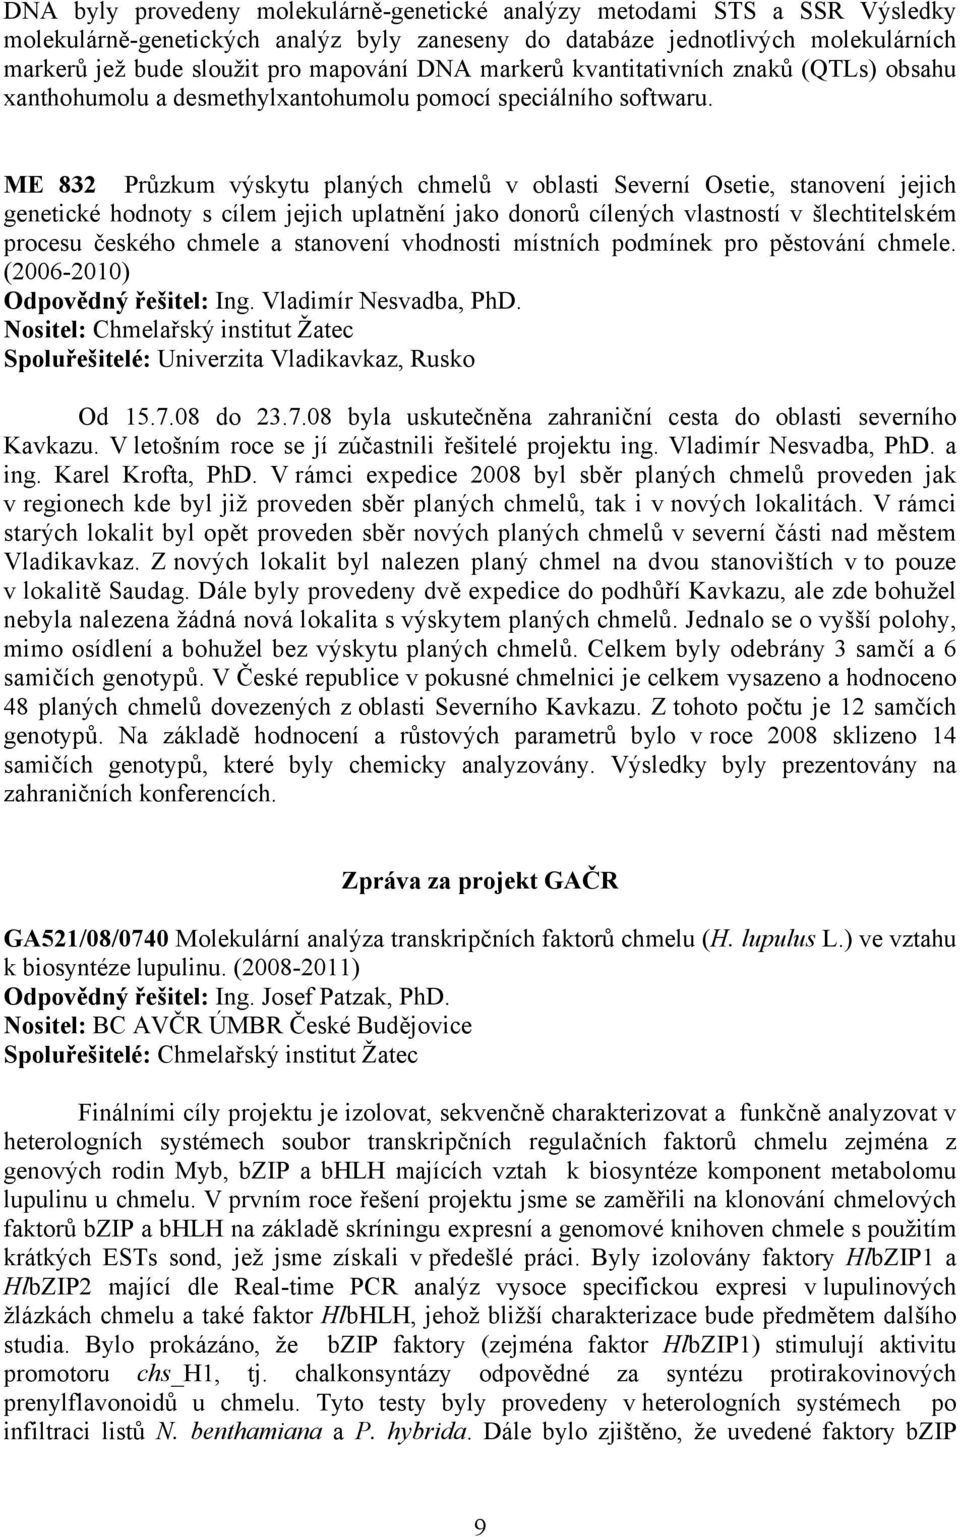 ME 832 Průzkum výskytu planých chmelů v oblasti Severní Osetie, stanovení jejich genetické hodnoty s cílem jejich uplatnění jako donorů cílených vlastností v šlechtitelském procesu českého chmele a